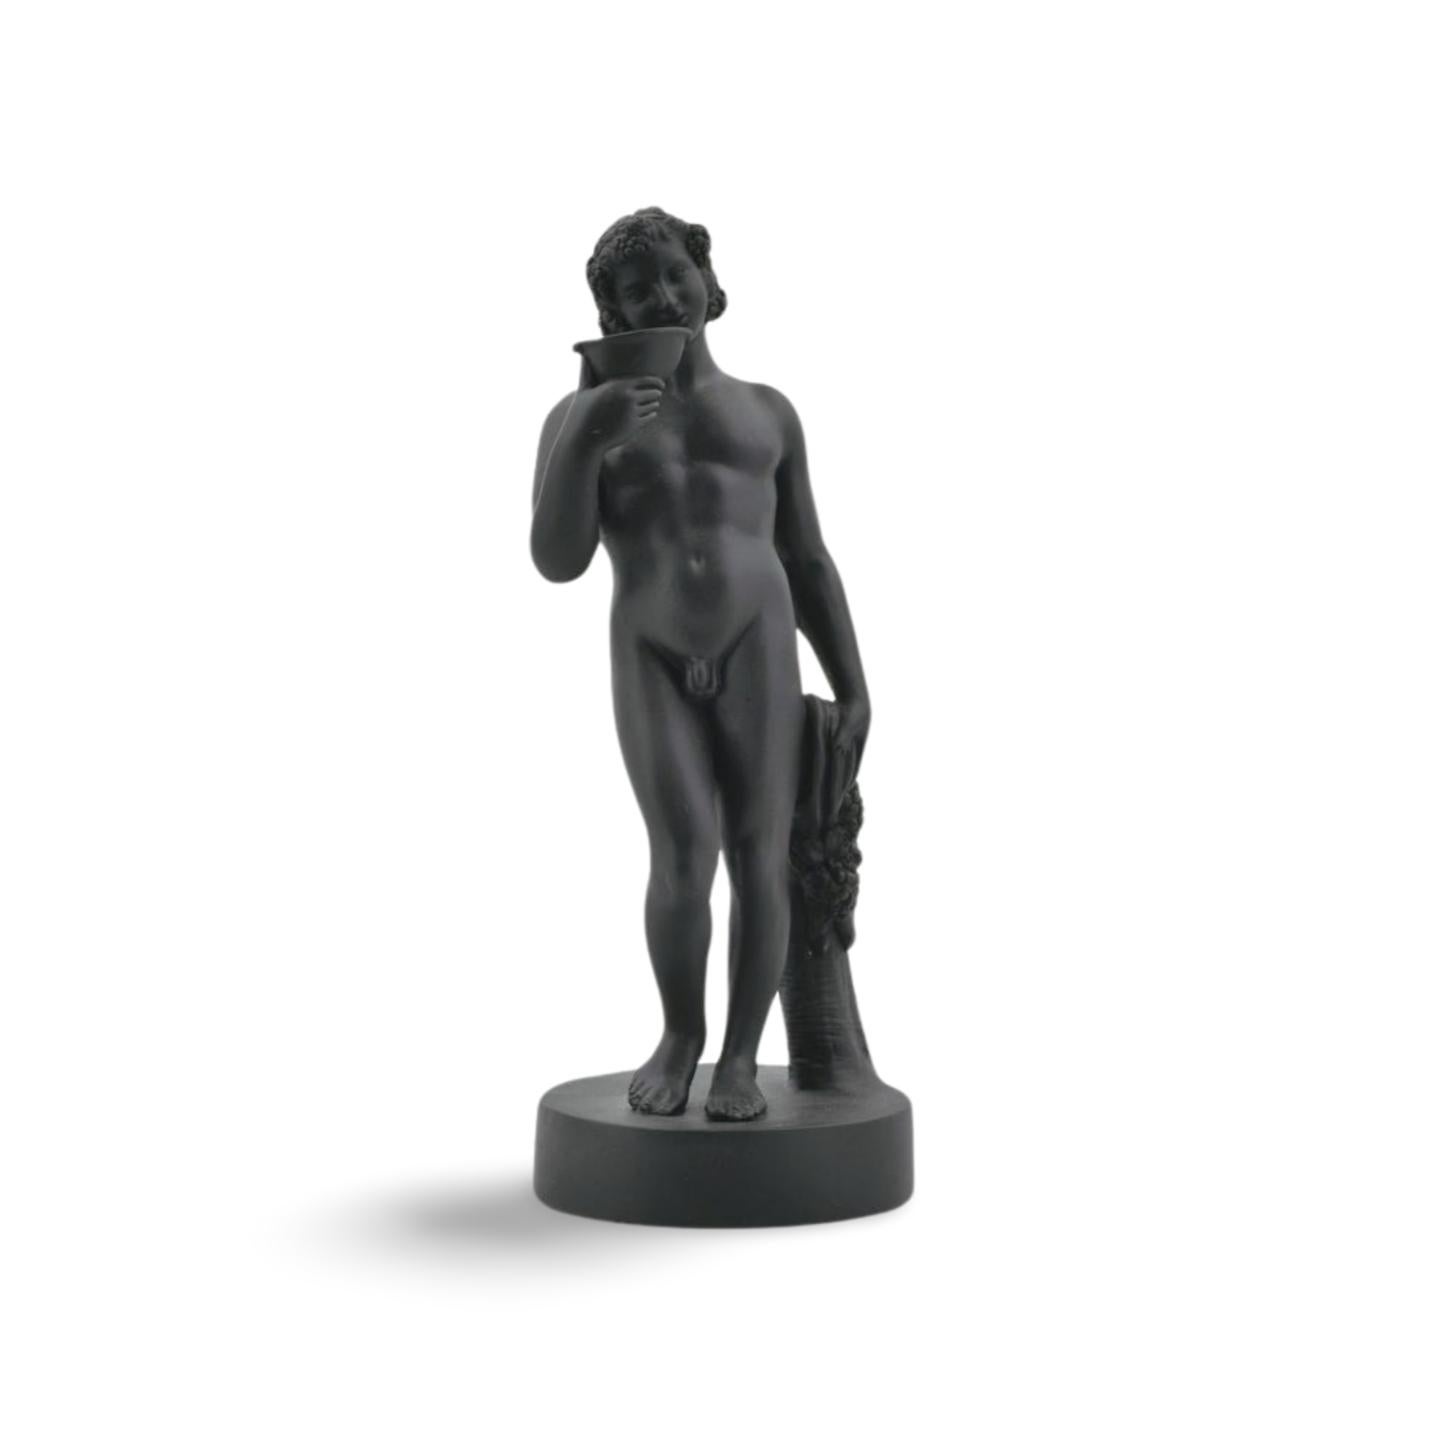 Außergewöhnlich seltene frühe Bacchus-Figur aus schwarzem Basalt. Die Mischbuchstaben-Marke platziert diese Figur zwischen 1780 und 1785.

Er ist in typischer Manier dargestellt, den Kopf mit Trauben geschmückt und mit einem Weinkelch an den